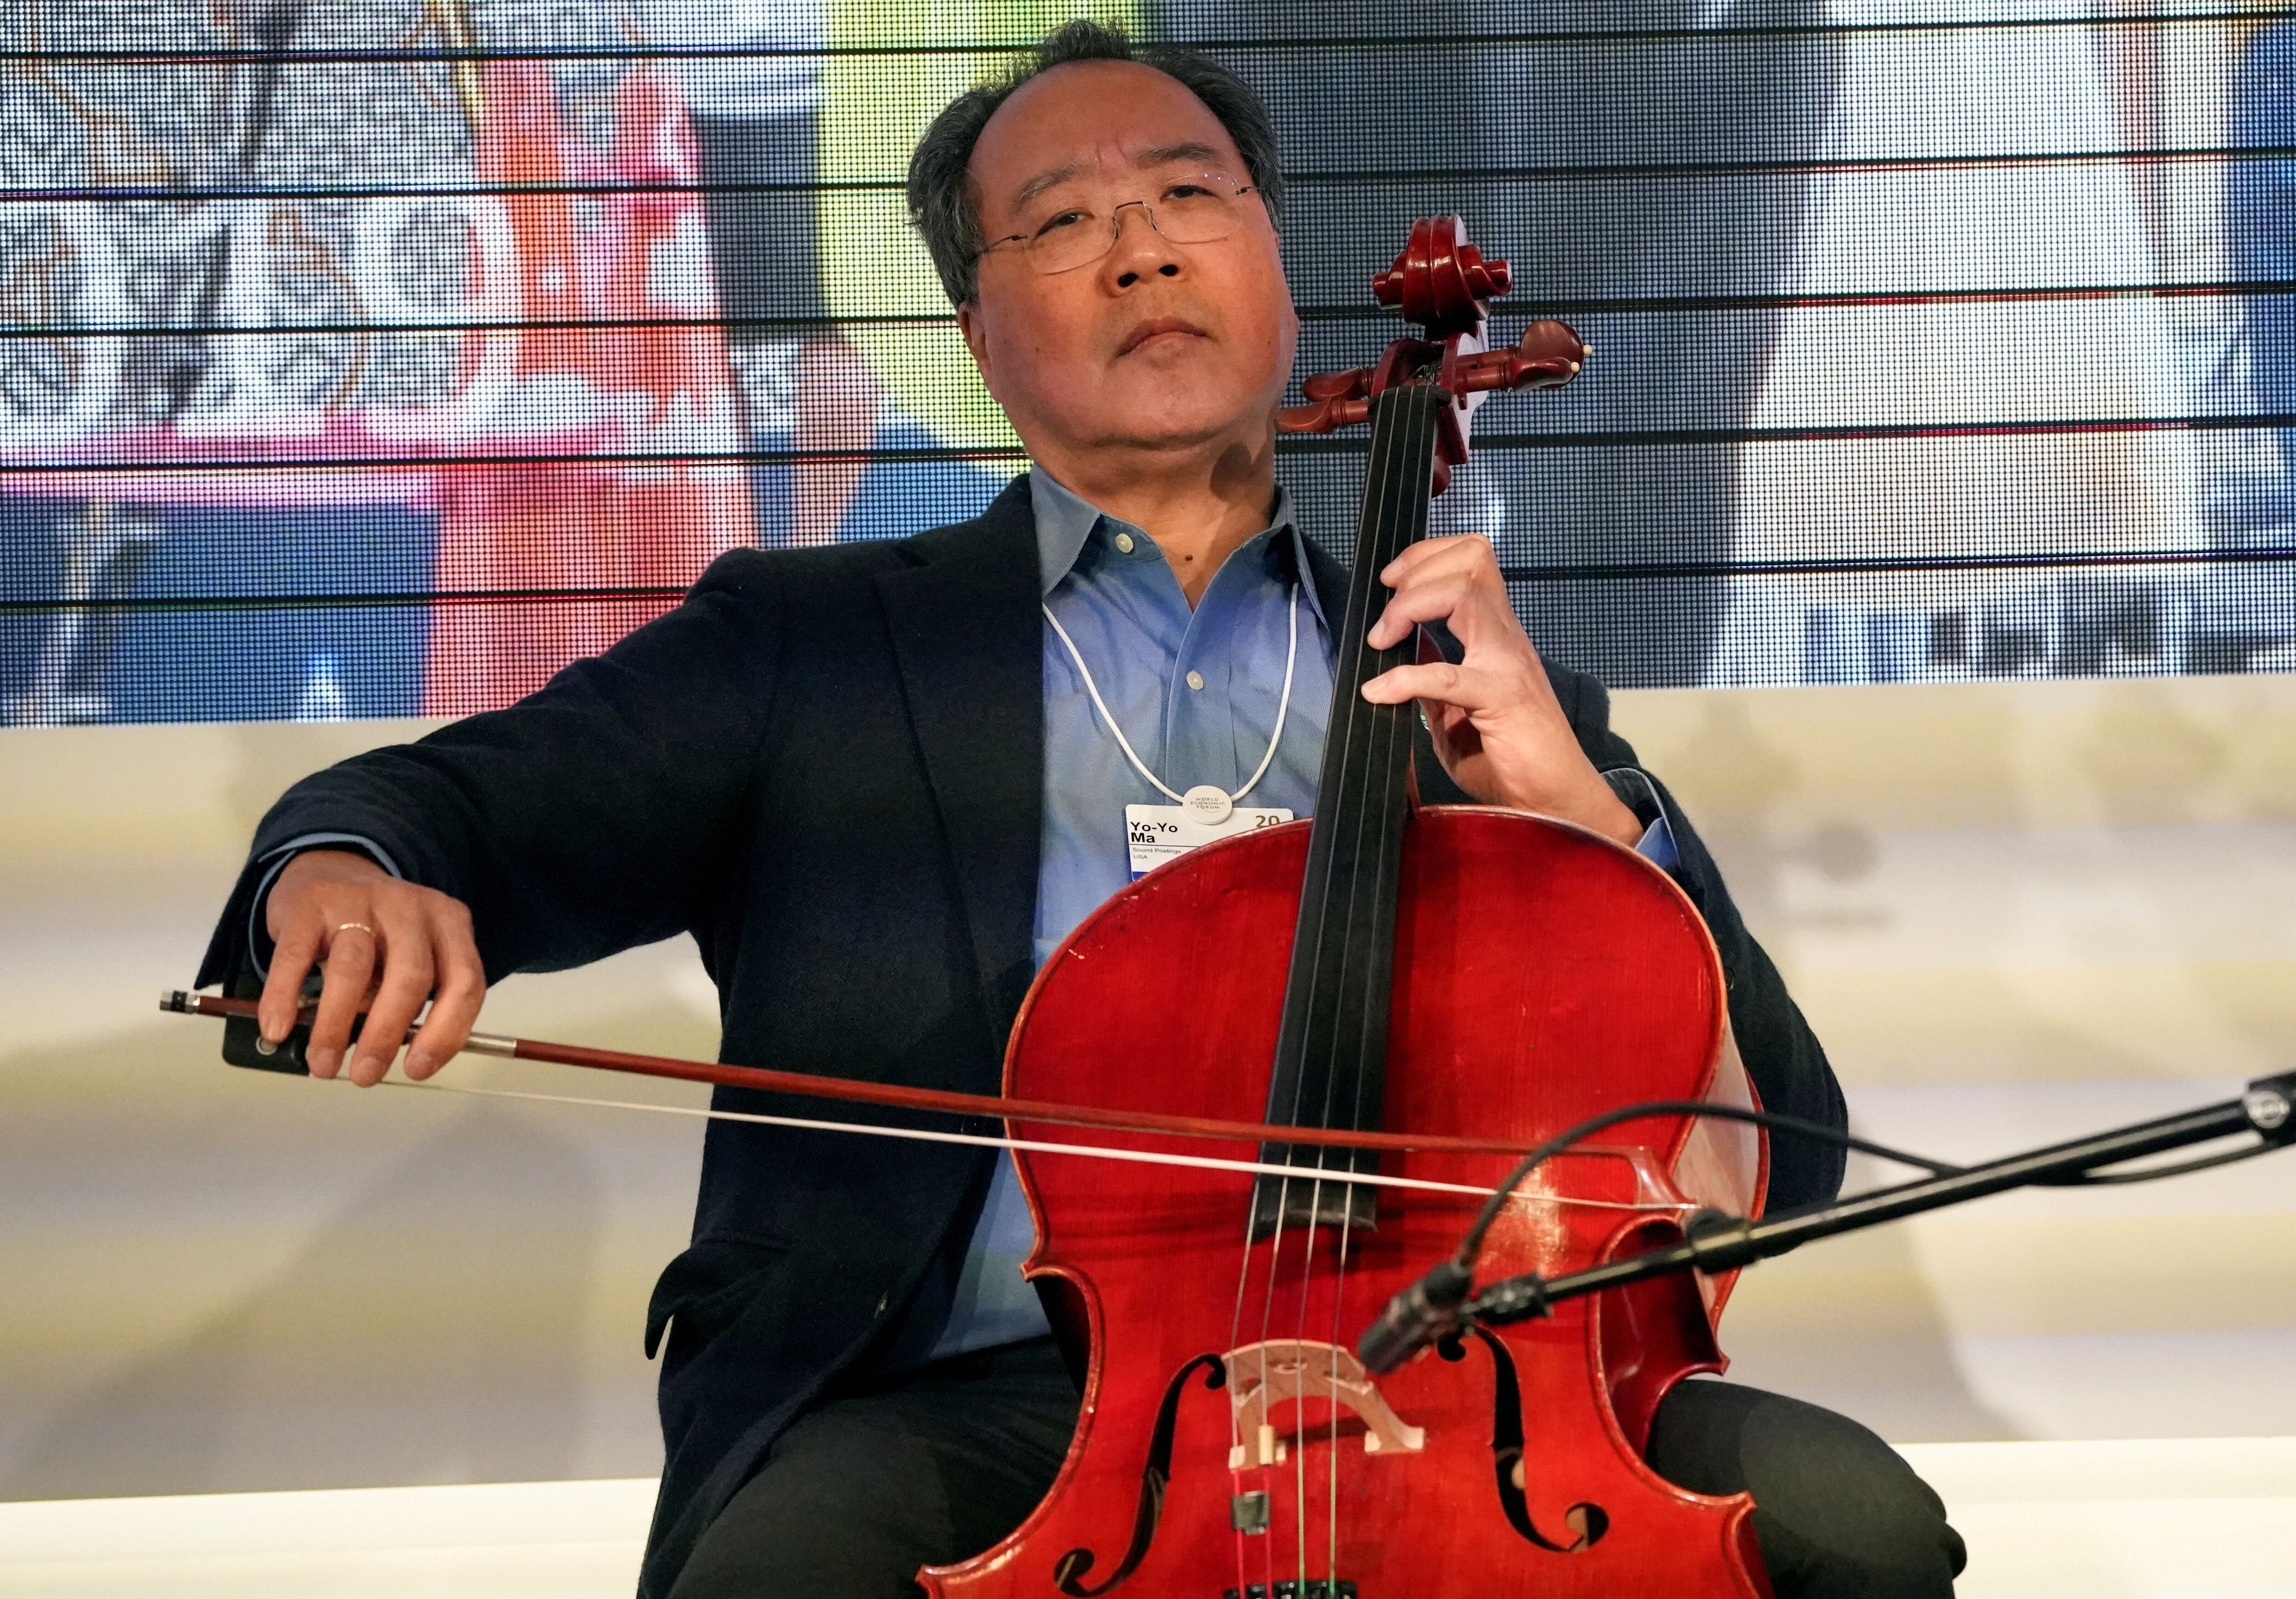 El mítico John Williams se combinará con el violonchelista Yo-Yo Ma para un concierto el 22 de febrero (REUTERS/Denis Balibouse)